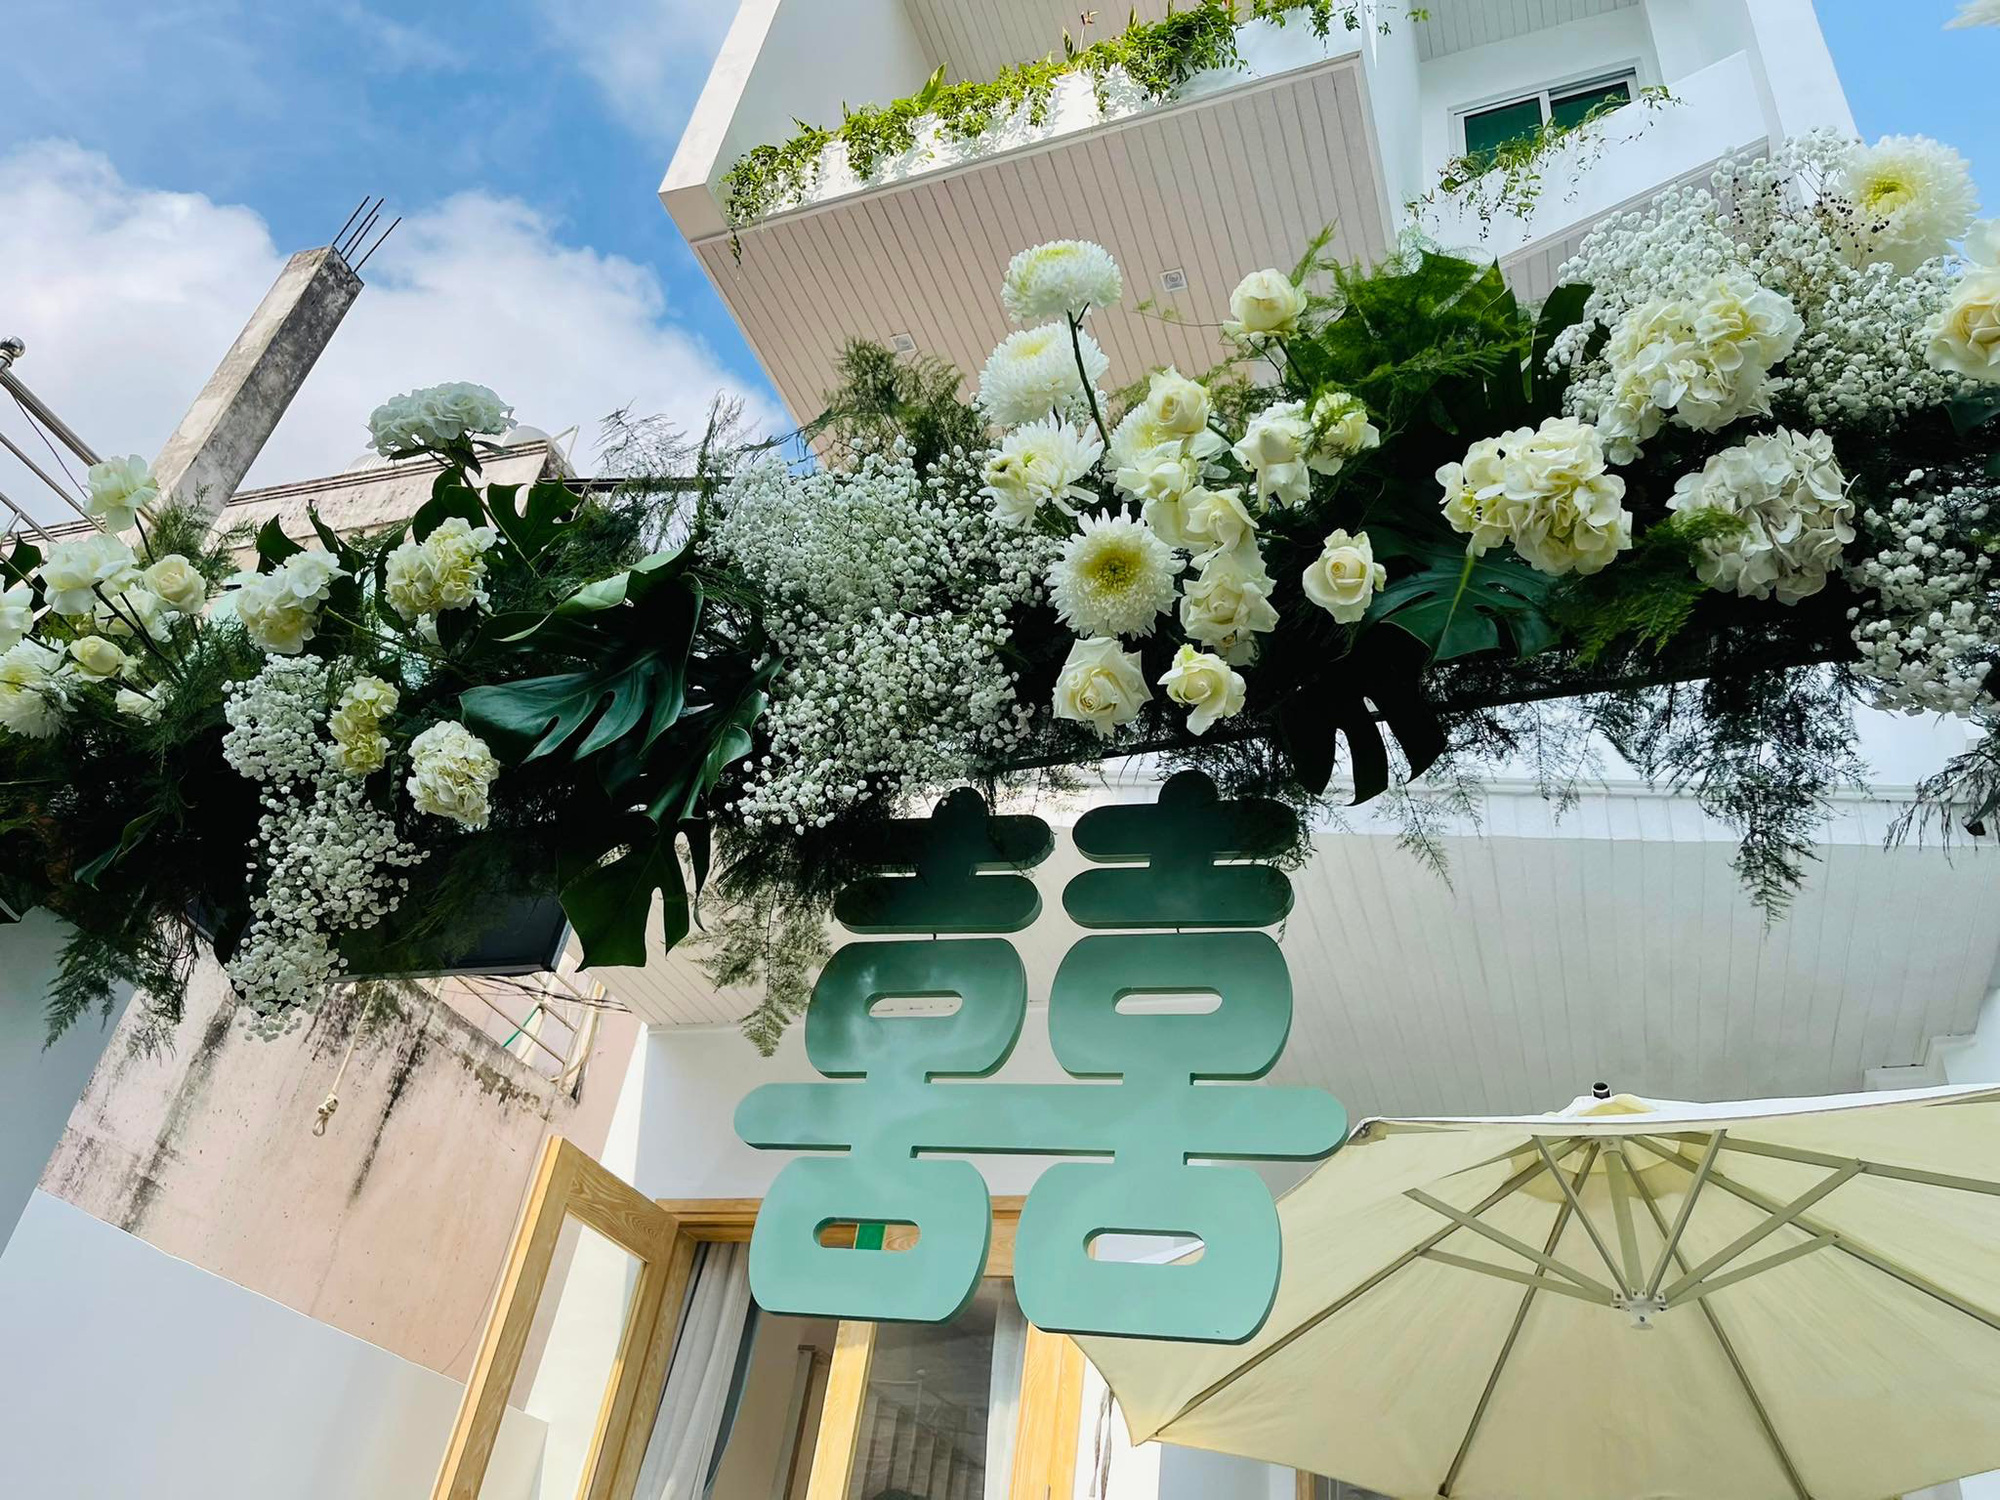 Đám cưới Phương Trinh Jolie - Lý Bình: Nhà riêng trang hoàng đầy hoa tươi, tông màu cưới xanh mint quá xinh-4